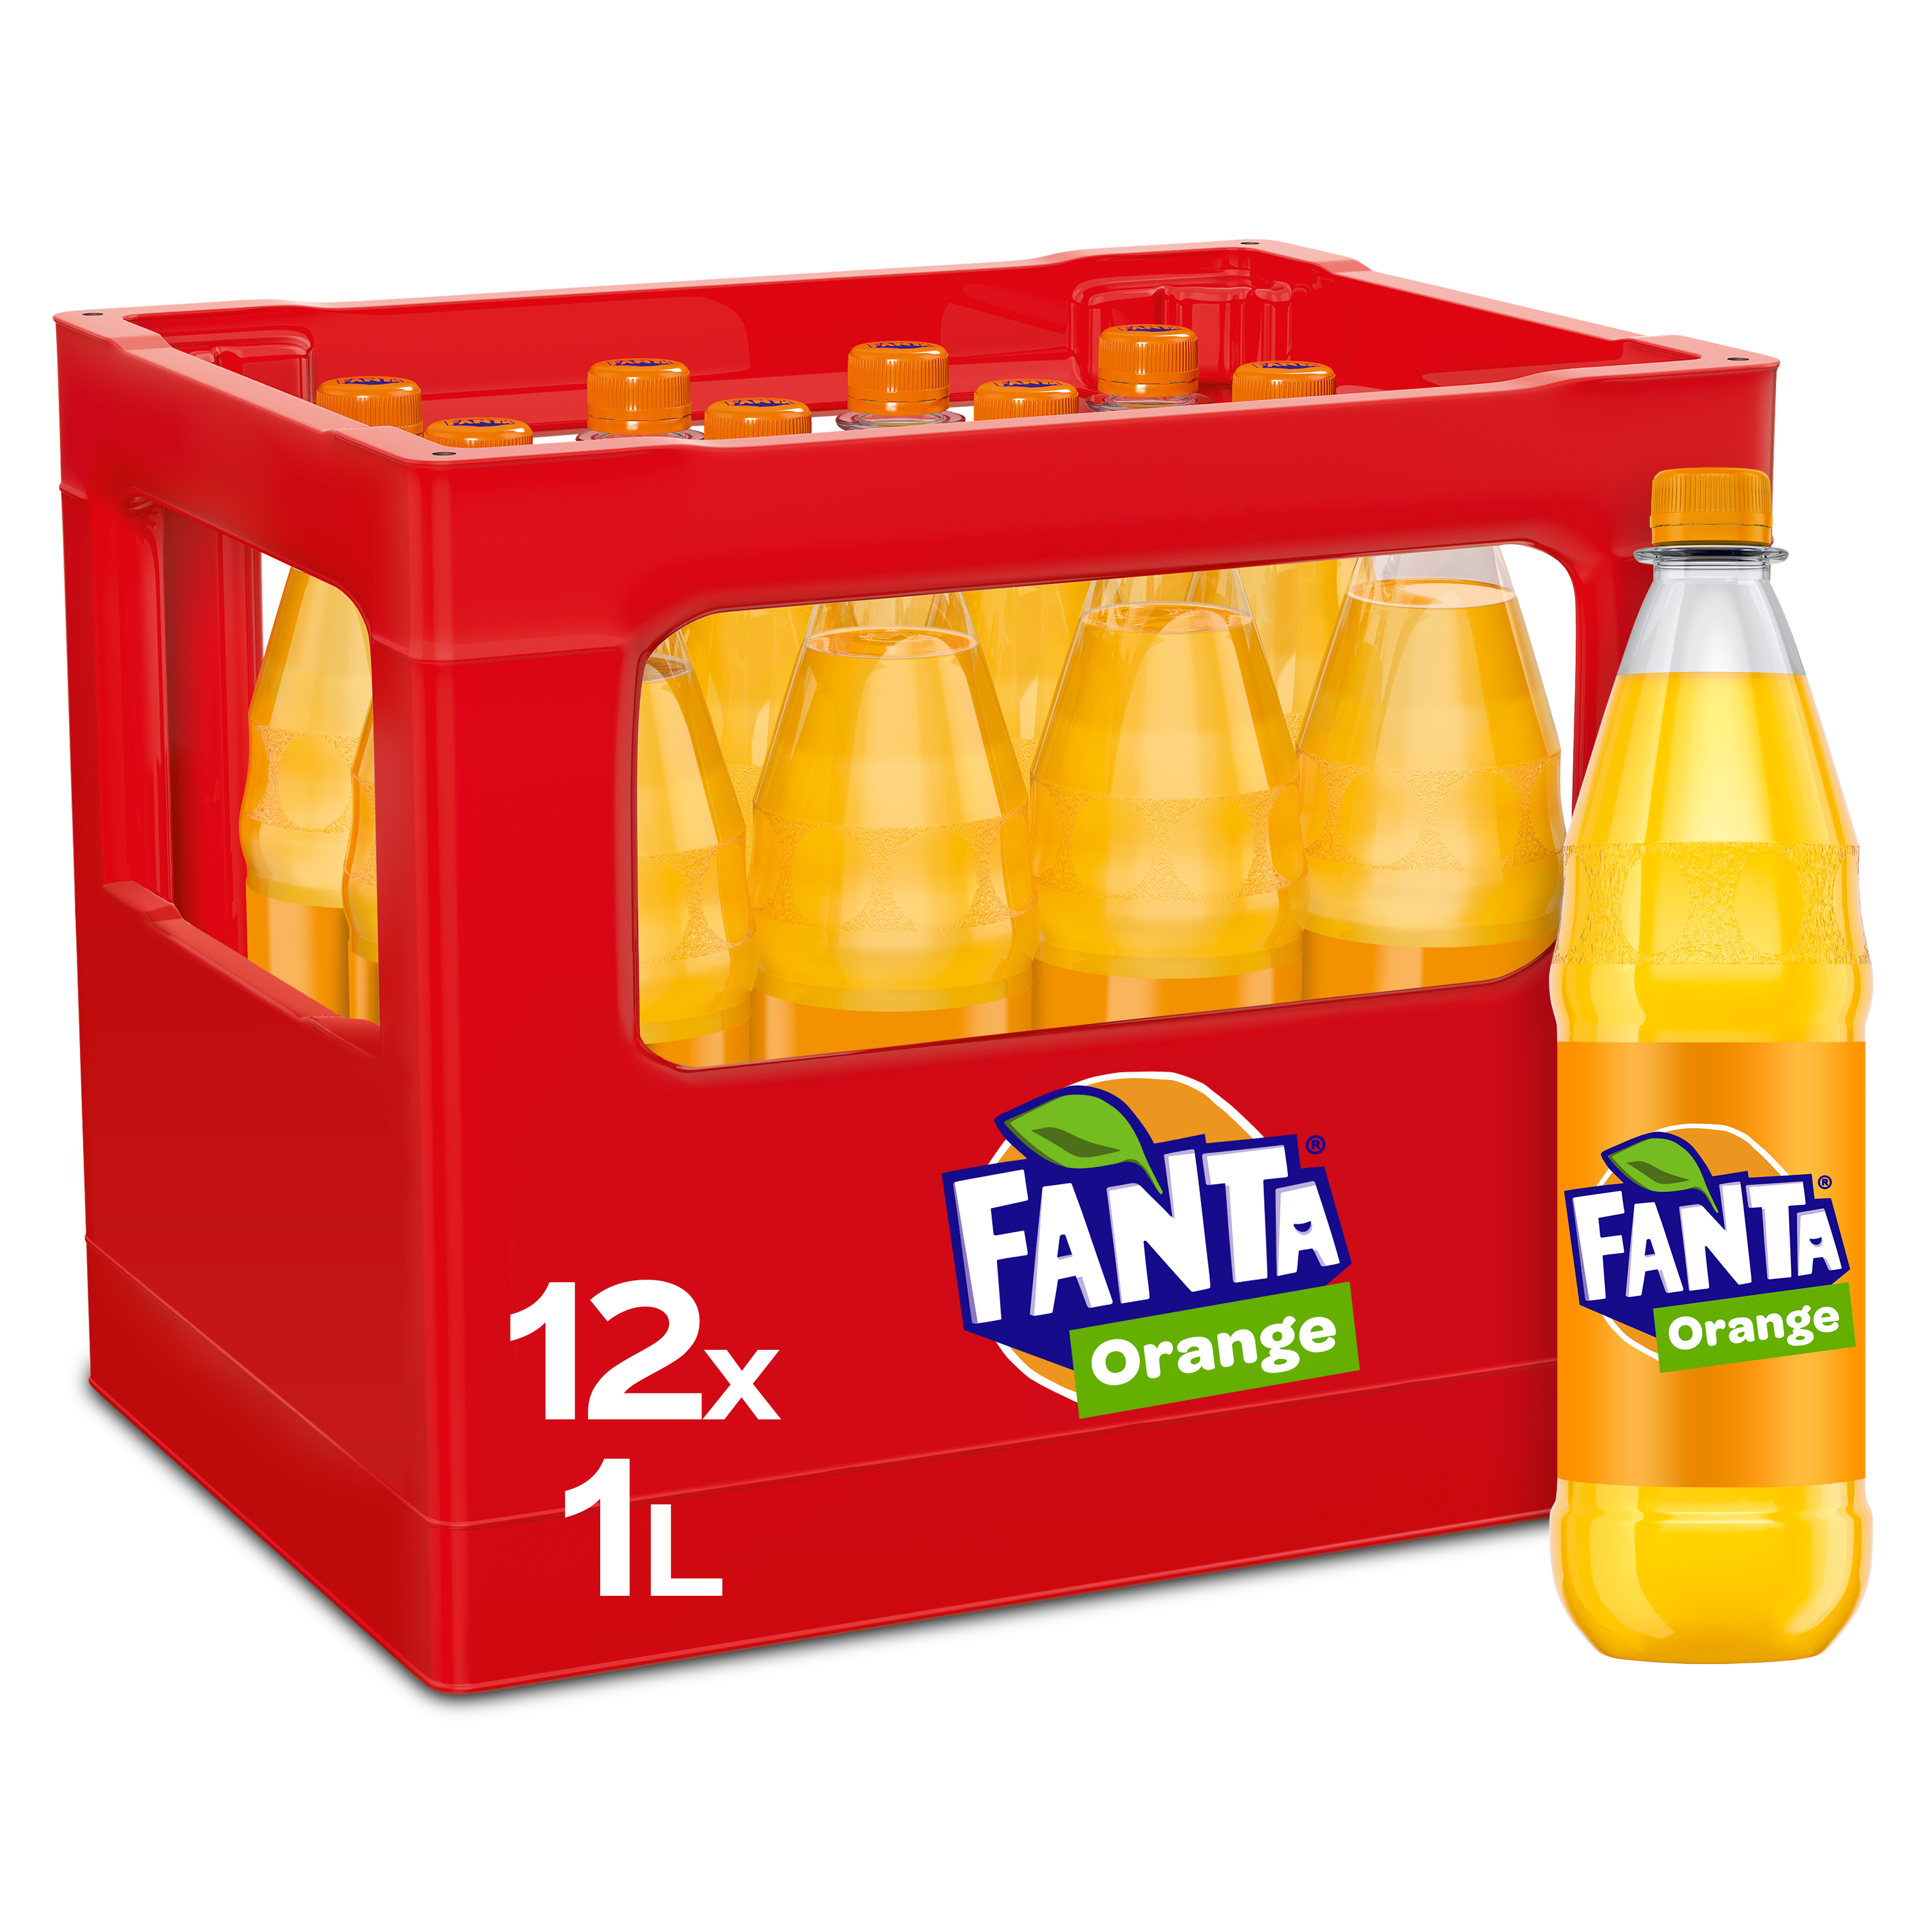 Fanta-Orange PET 12/1.0